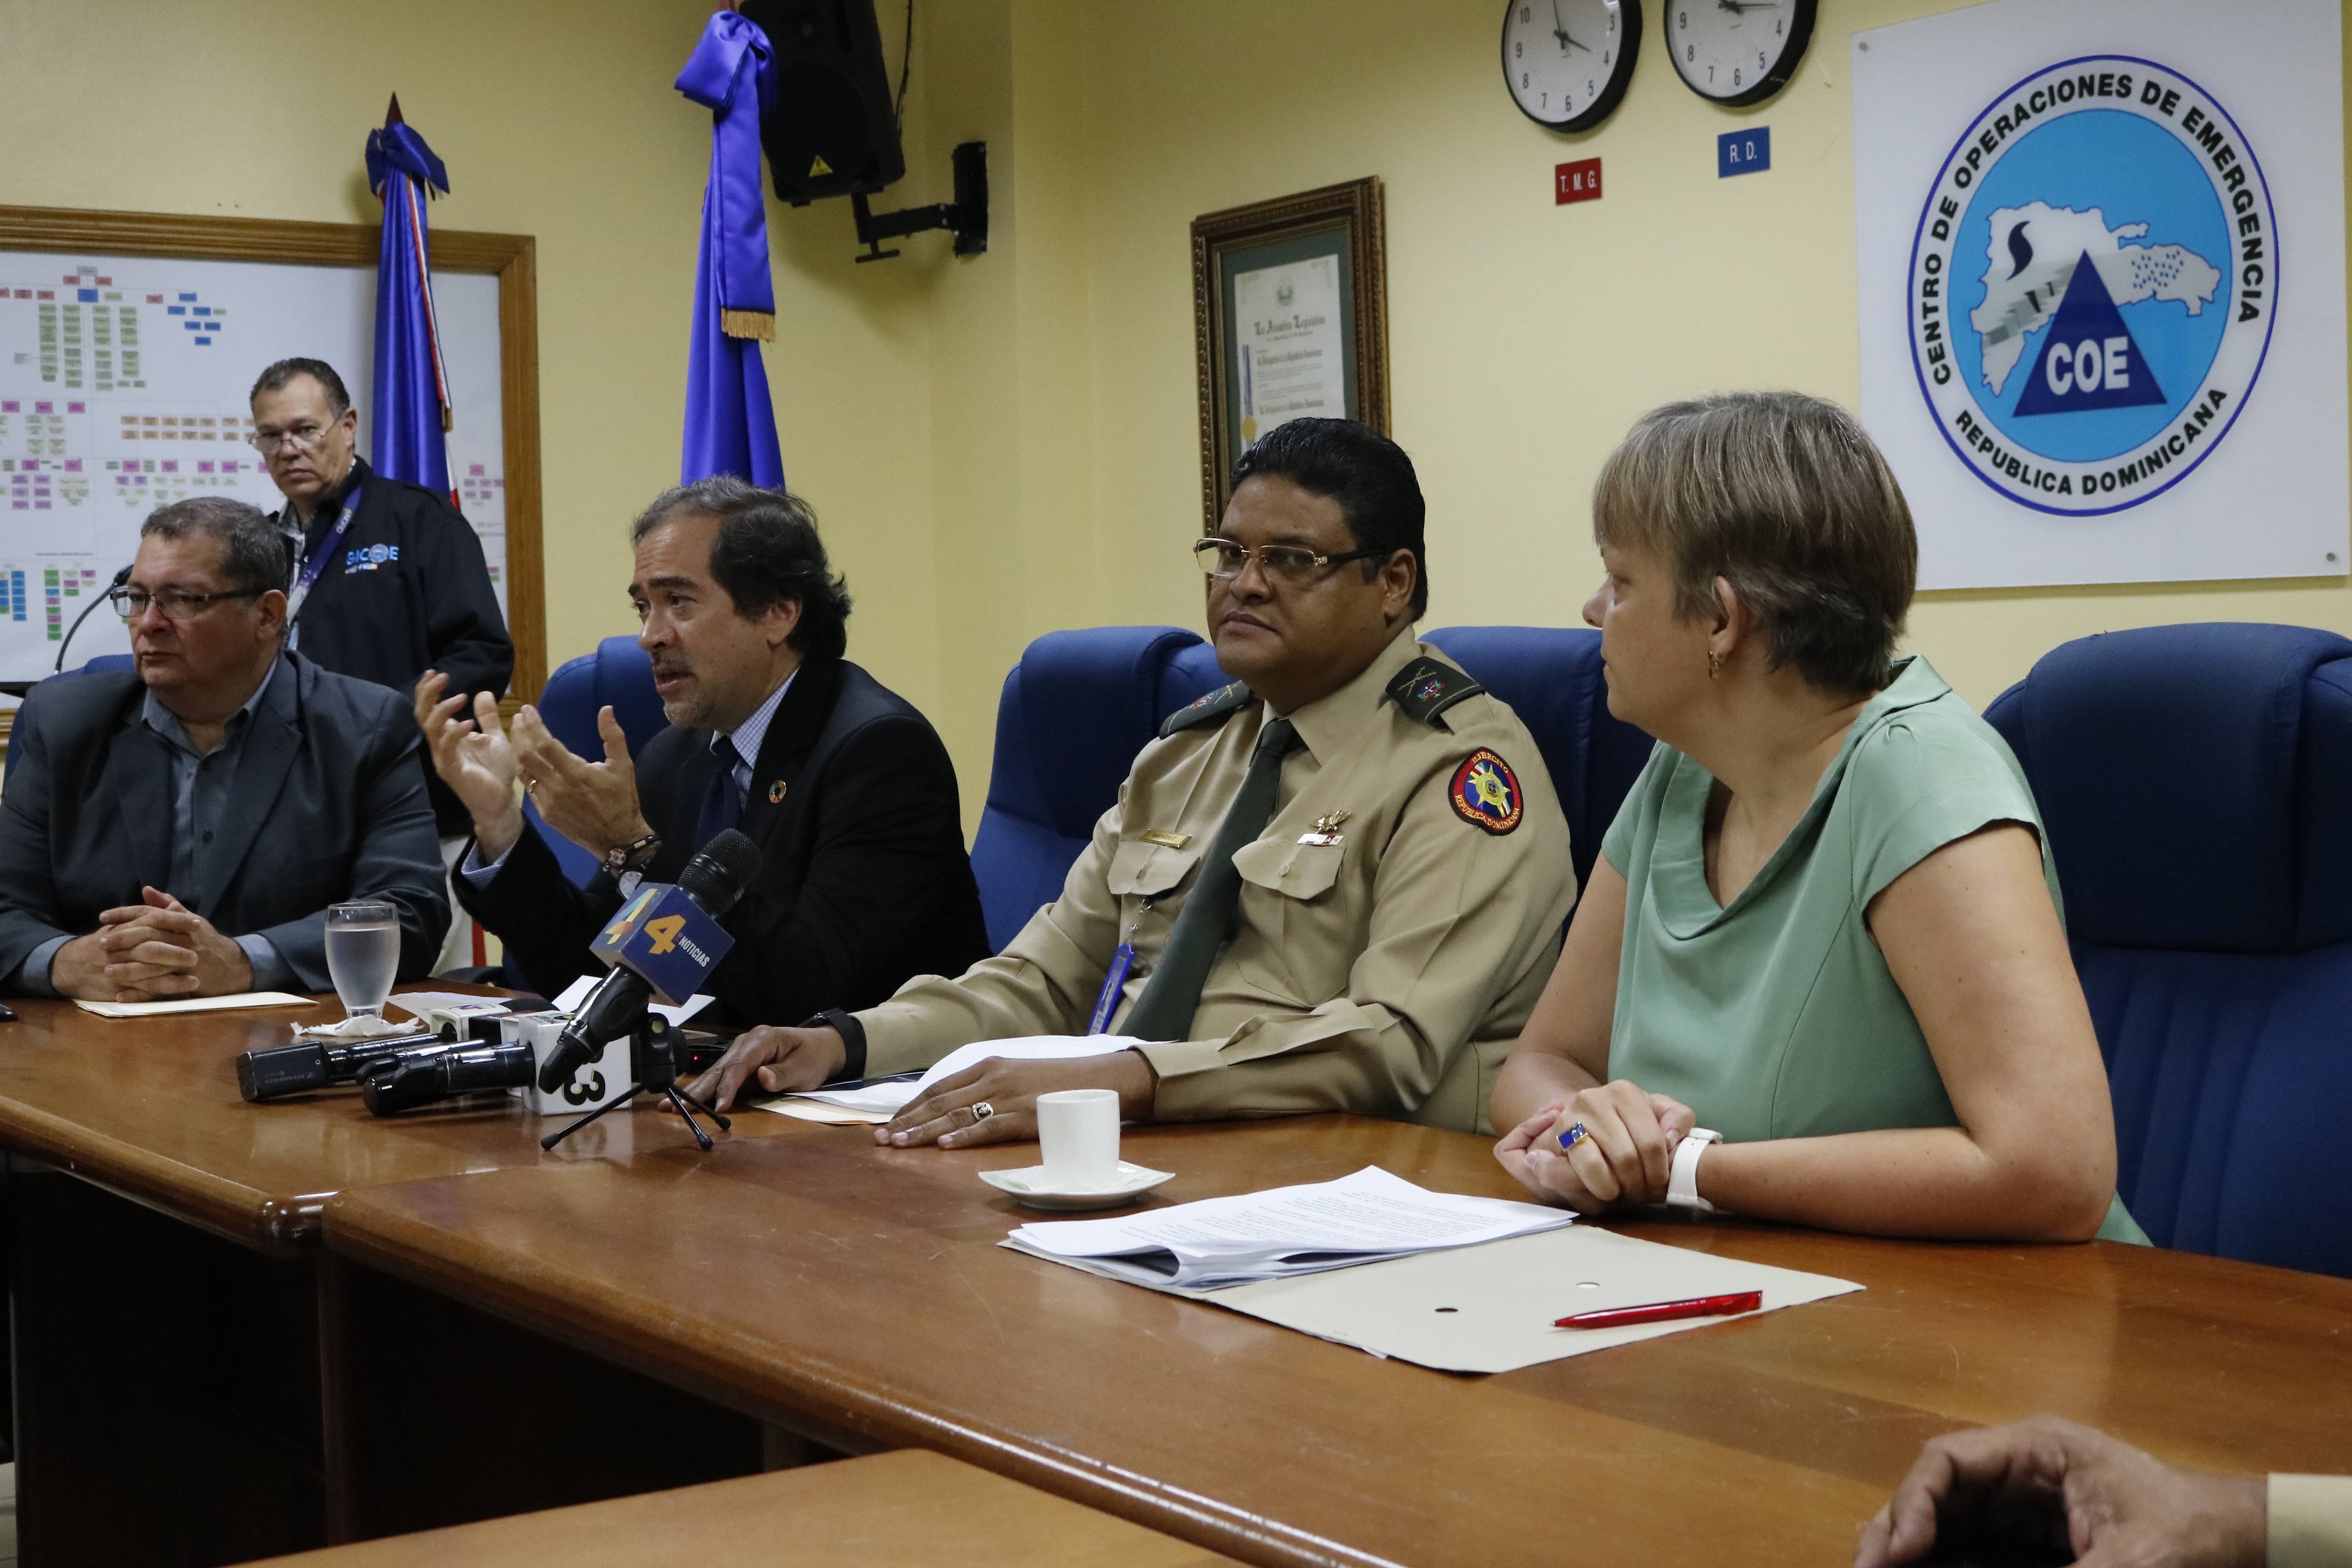 República Dominicana: Sistema Nacional de Gestión de Riesgo sigue fortaleciendo sus capacidades